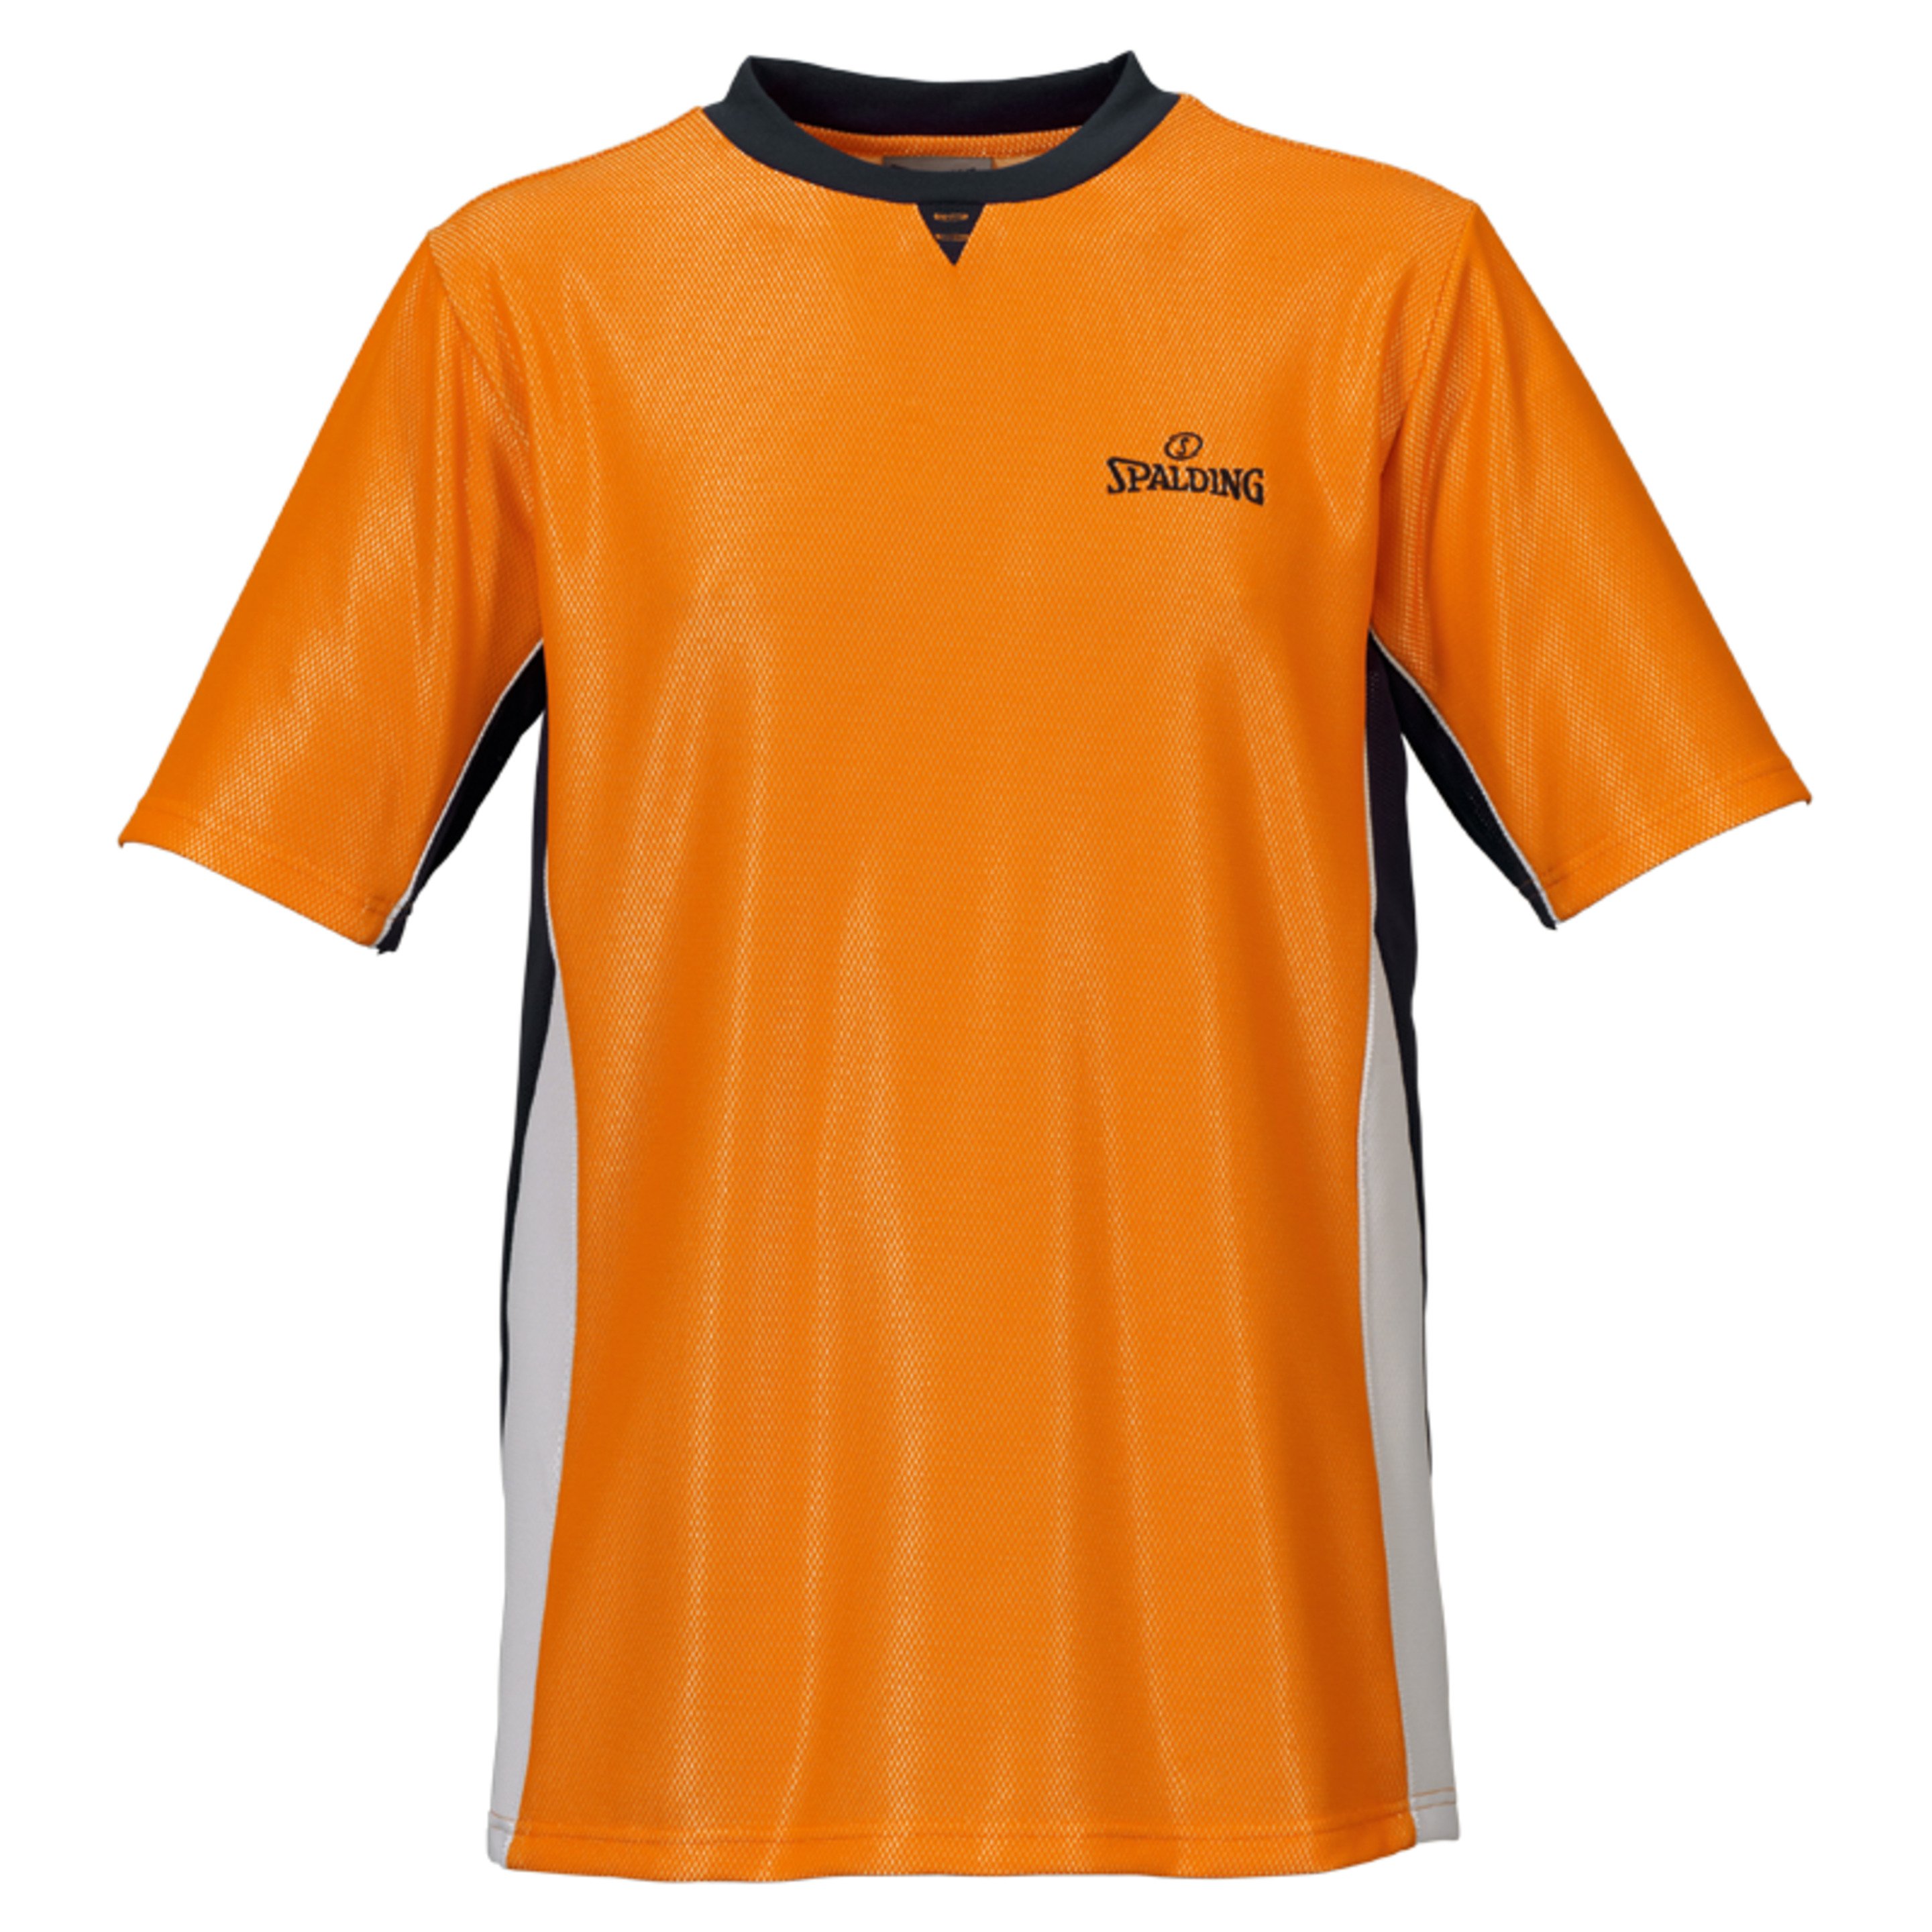 Referee Shirt Pro Naranja/negro Spalding